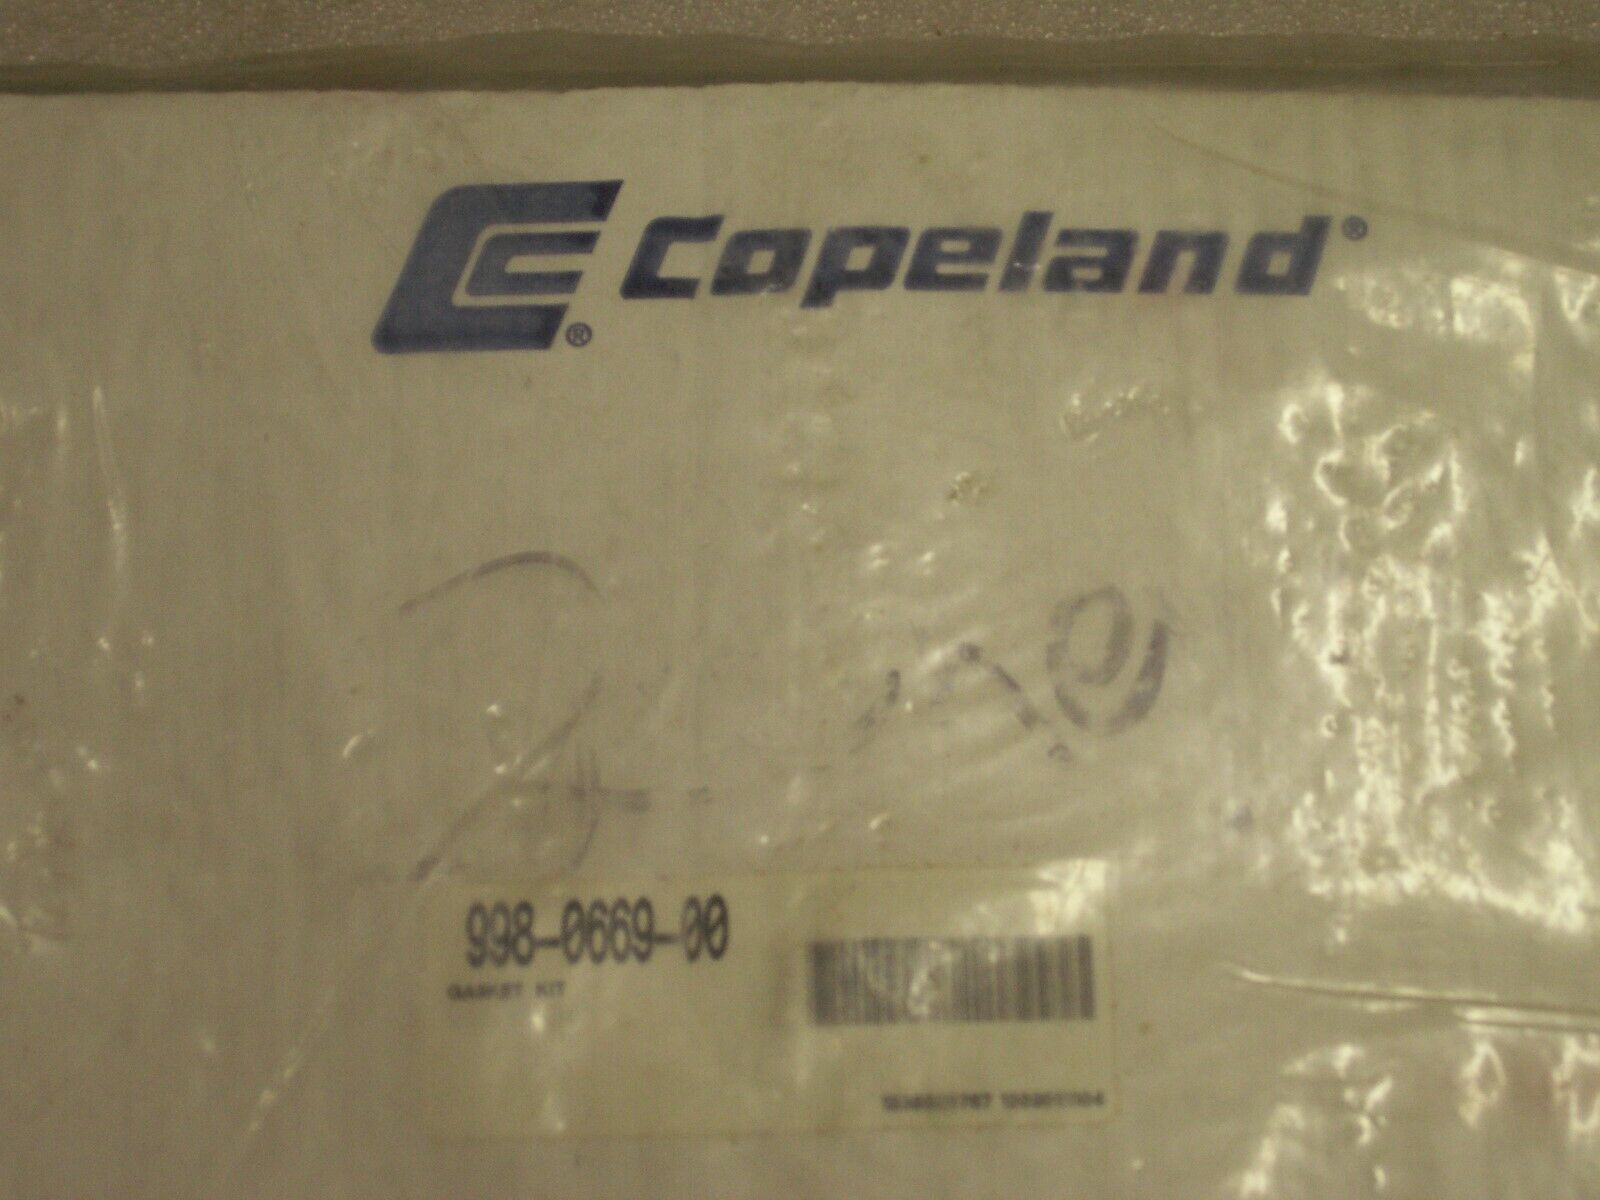 Copeland HVAC Compressor Gasket Kit 988-0669-00 Certified Parts NEW Sealed  (1M)